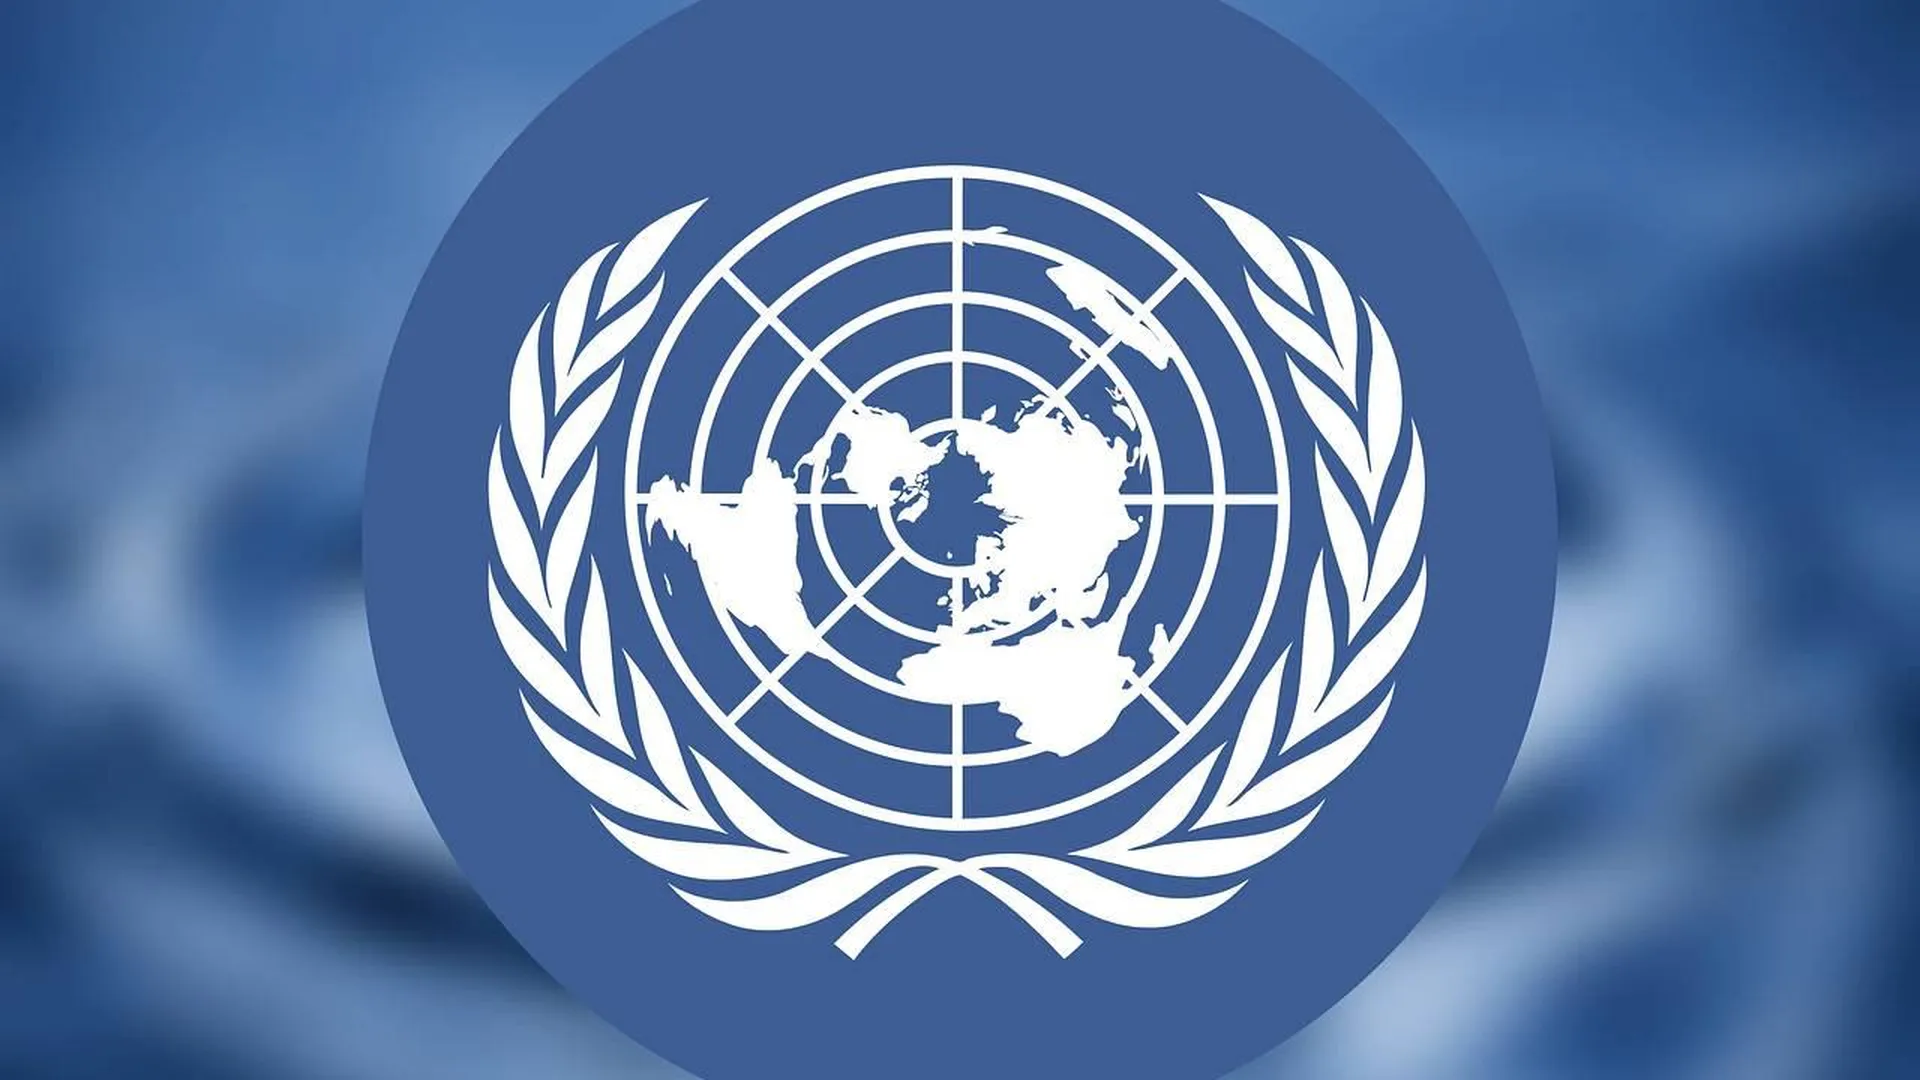 Экосос оон. Организация Объединенных наций (ООН). Совет безопасности ООН эмблема. Генеральная Ассамблея ООН эмблема. Флаг ООН.